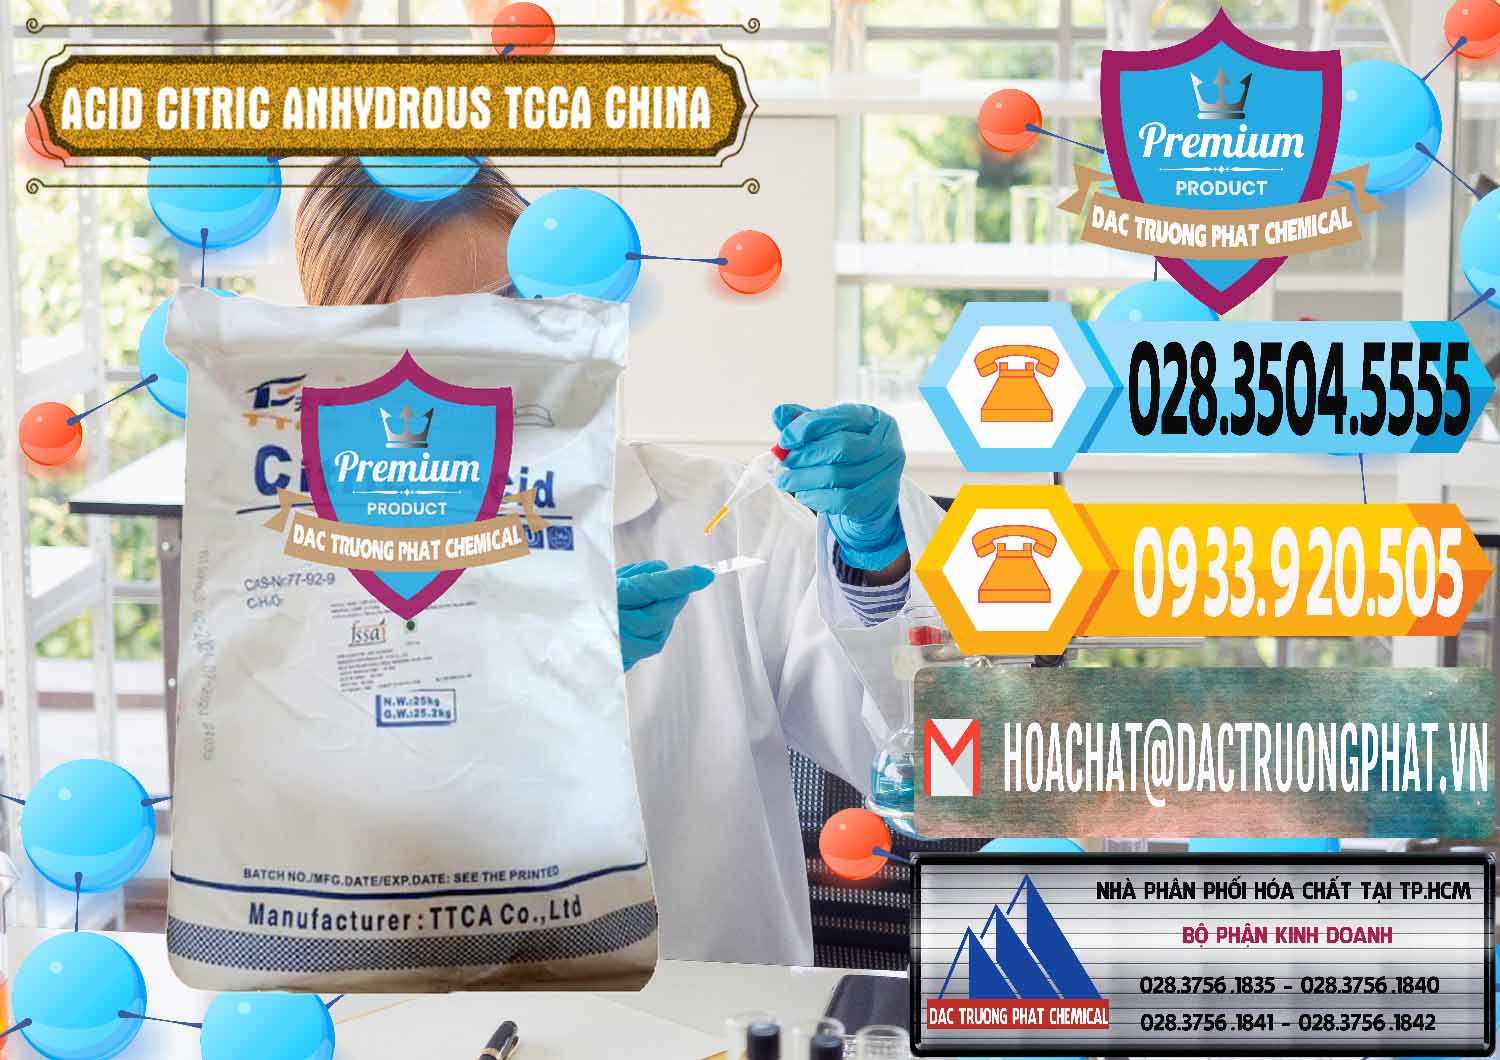 Cty chuyên cung cấp & bán Acid Citric - Axit Citric Anhydrous TCCA Trung Quốc China - 0442 - Nơi cung ứng & phân phối hóa chất tại TP.HCM - hoachattayrua.net